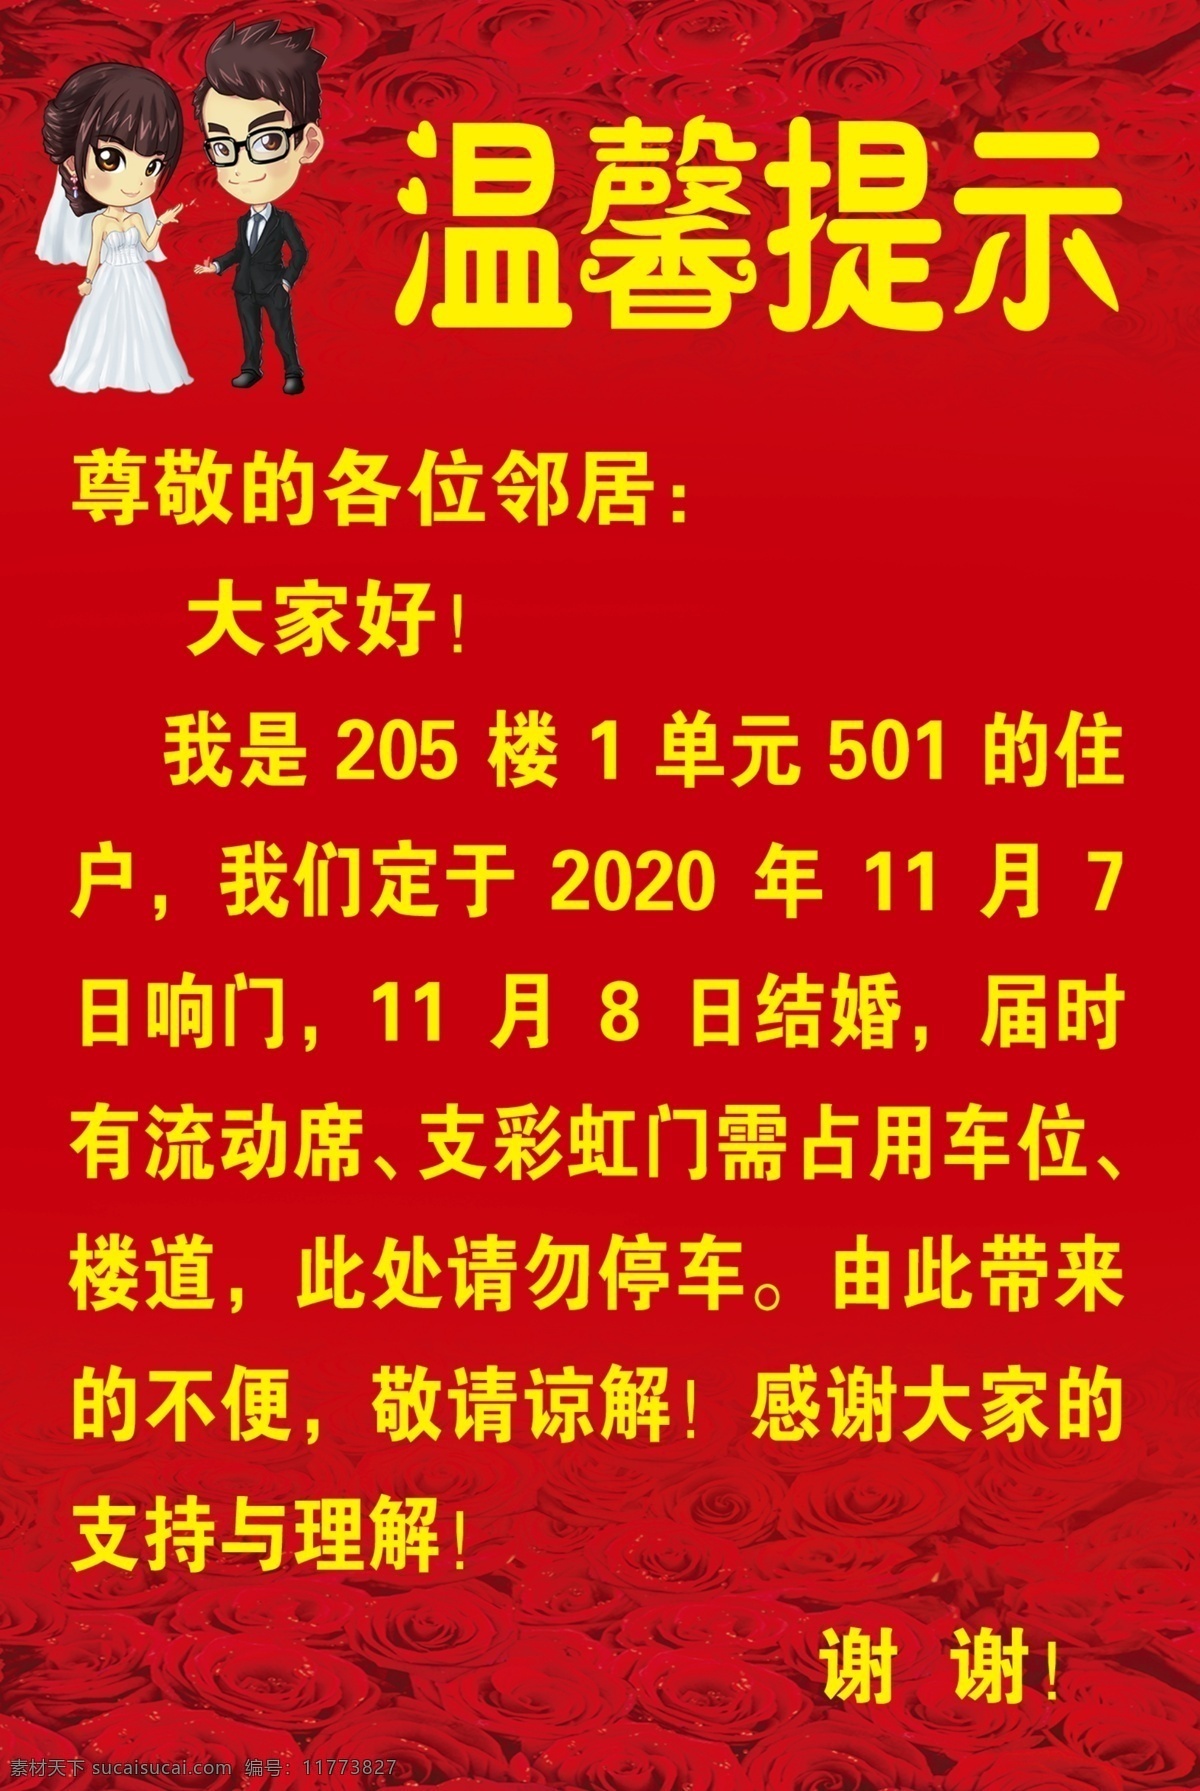 温馨提示图片 温馨提示 红色 结婚 卡通小人 日期 分层